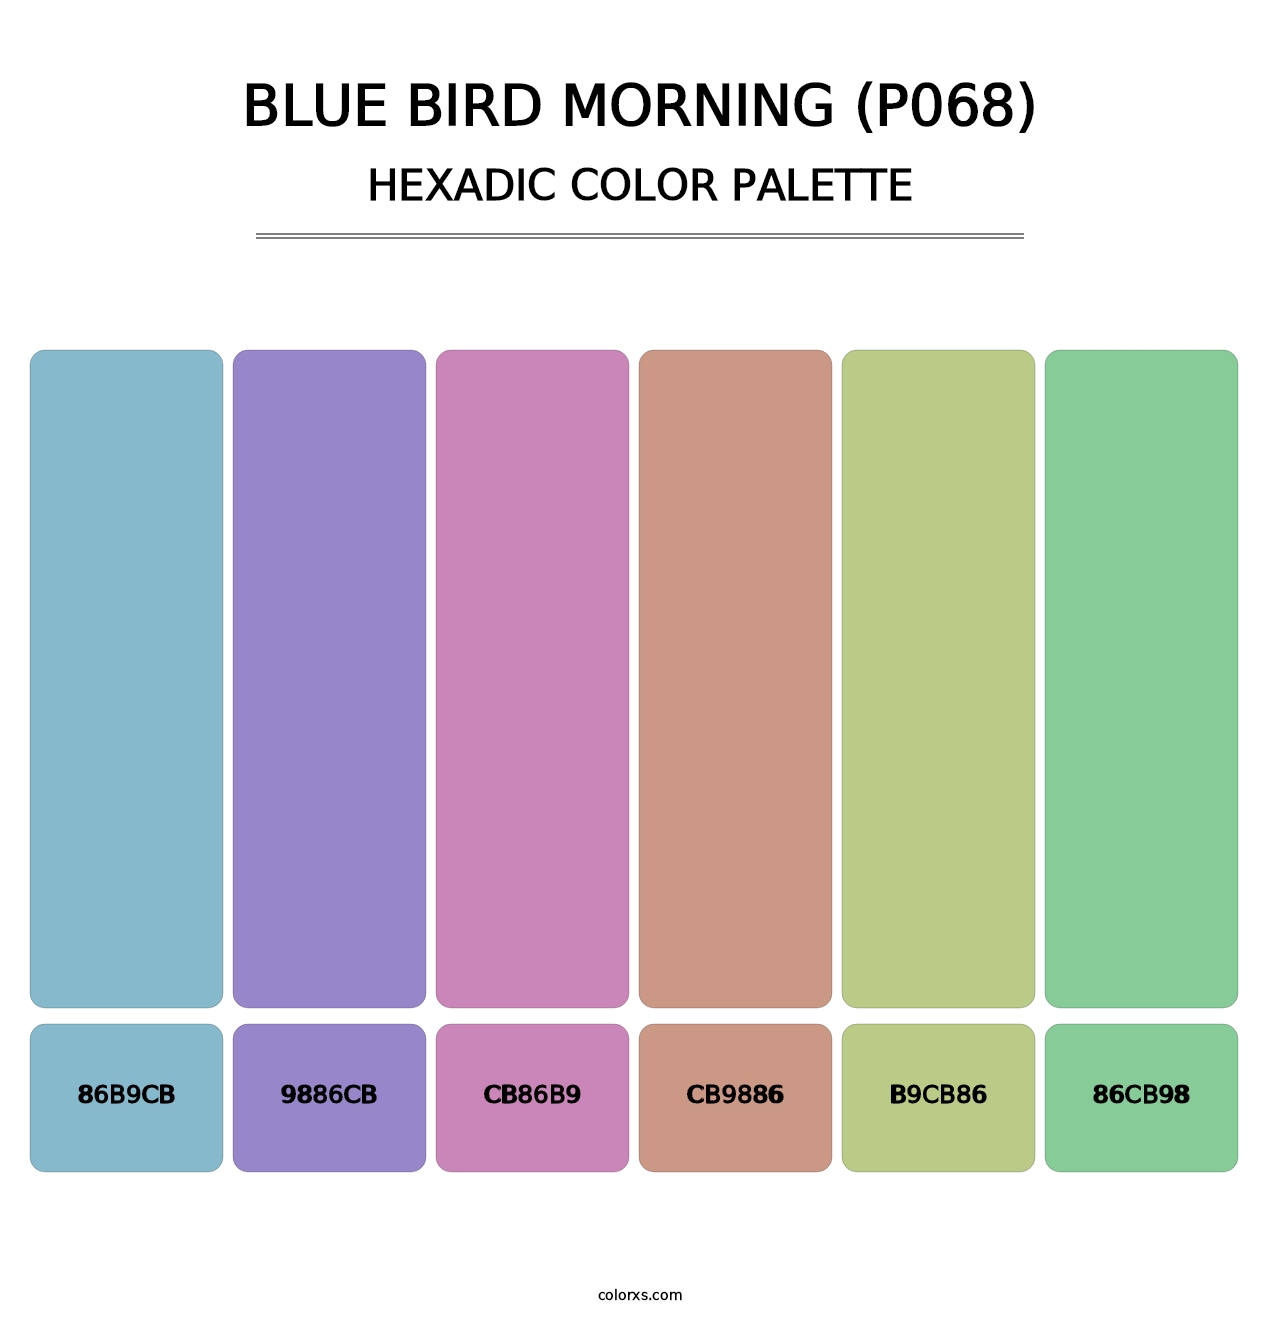 Blue Bird Morning (P068) - Hexadic Color Palette